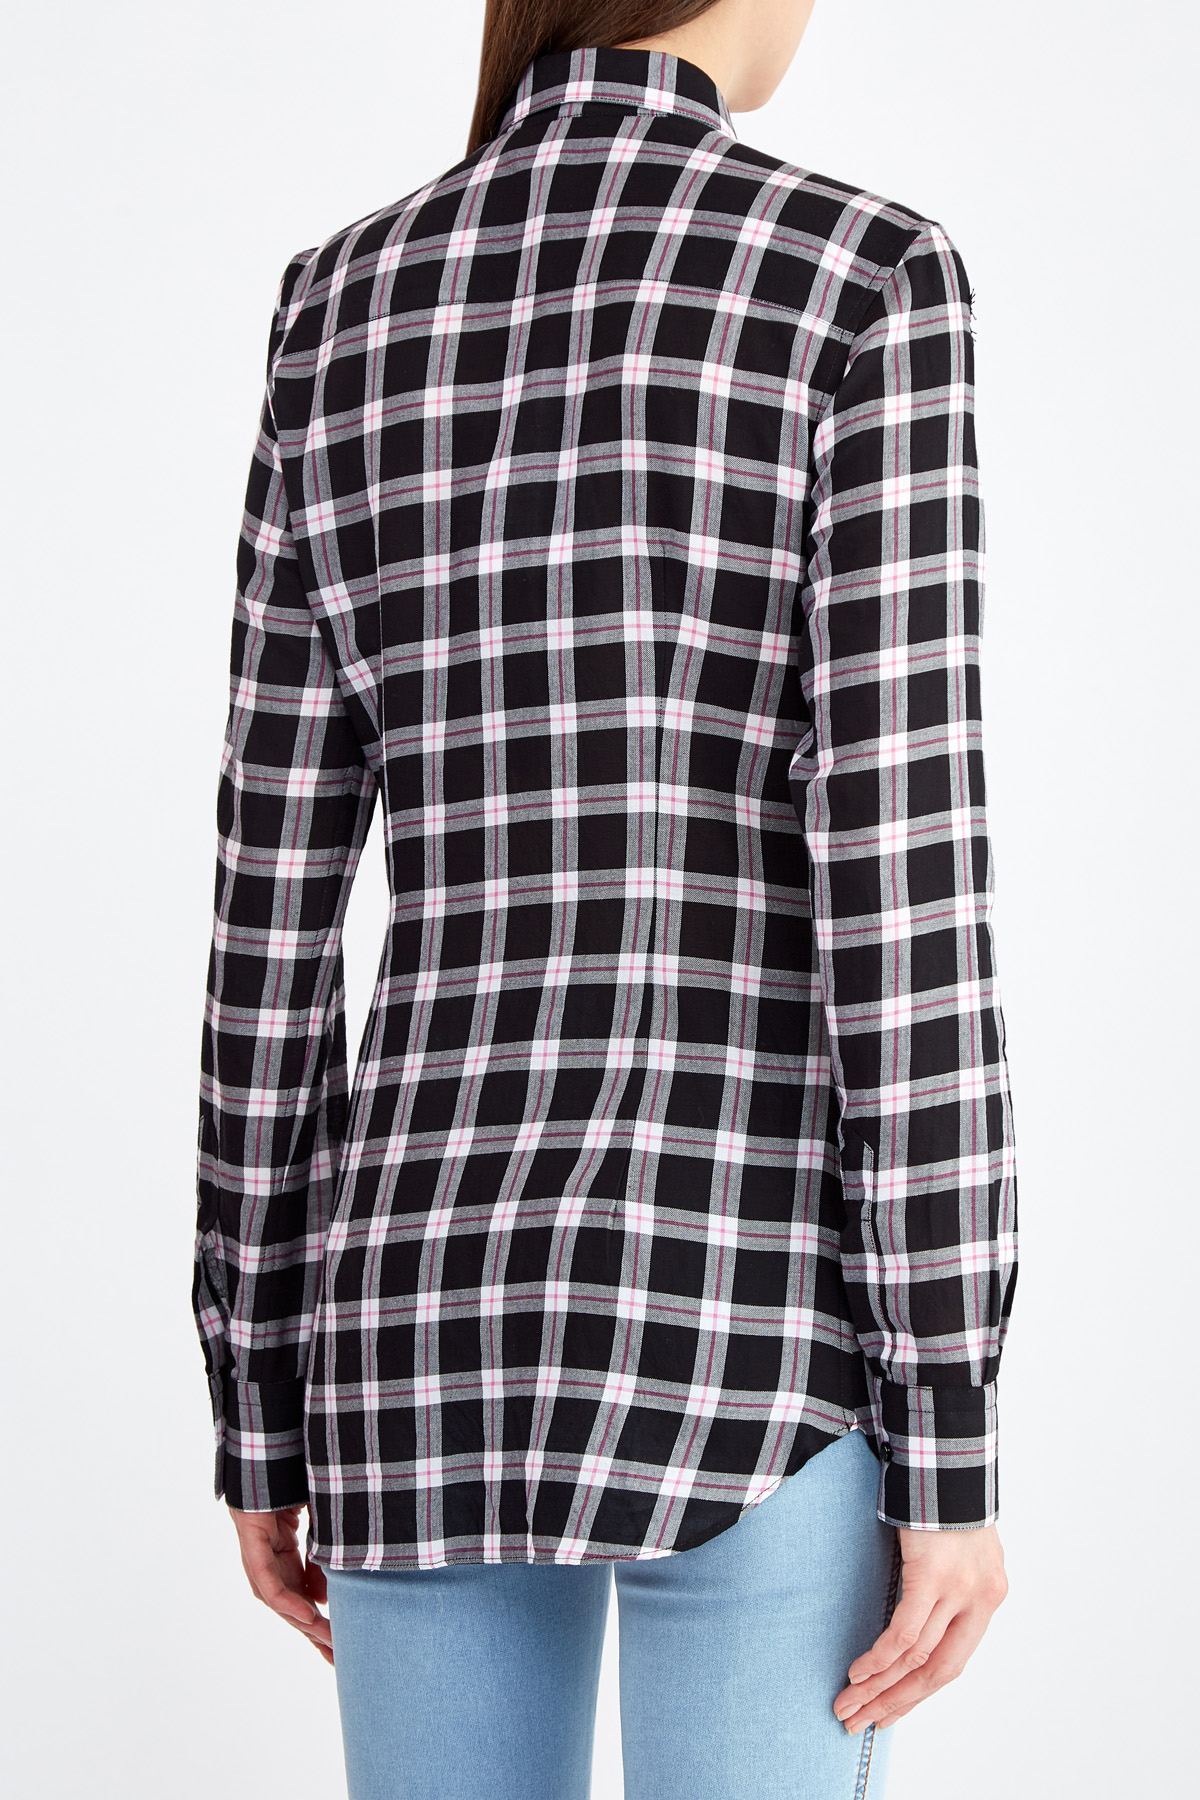 Приталенная рубашка из хлопка с отделкой кружевом ручной работы ERMANNO SCERVINO, цвет черно-белый, размер 40;44 - фото 4